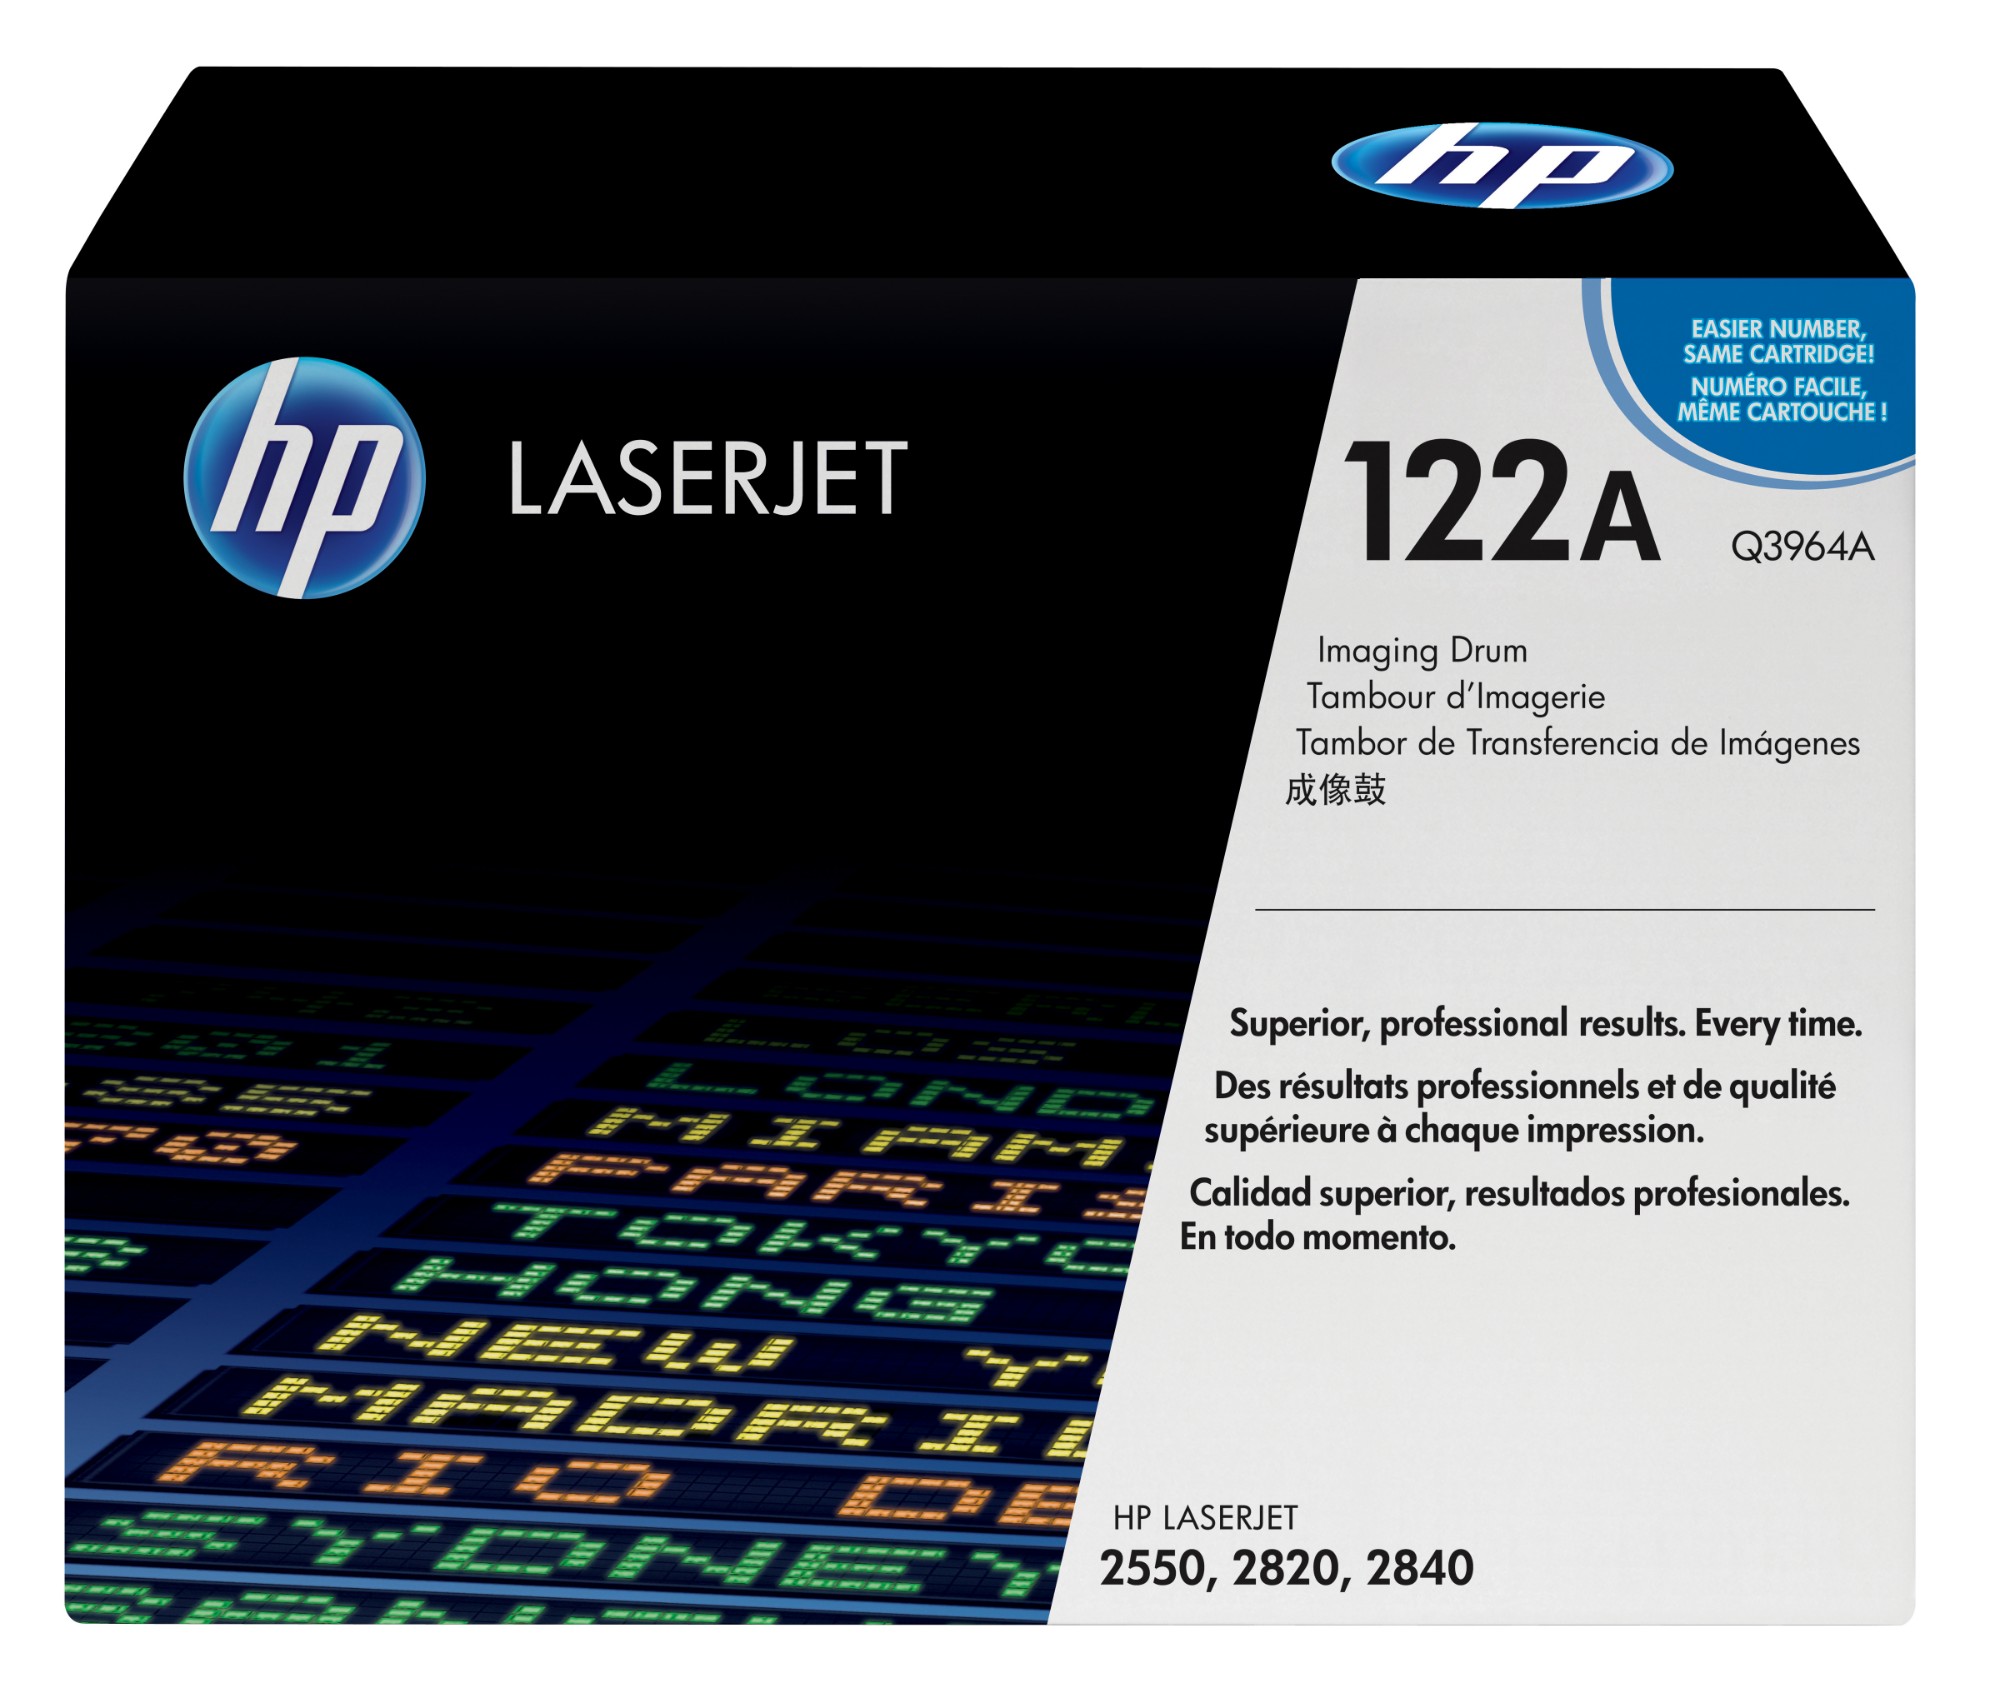 HP Q3964A/122A Drum kit, 20K pages ISO/IEC 19798 for HP Color LaserJet 2550